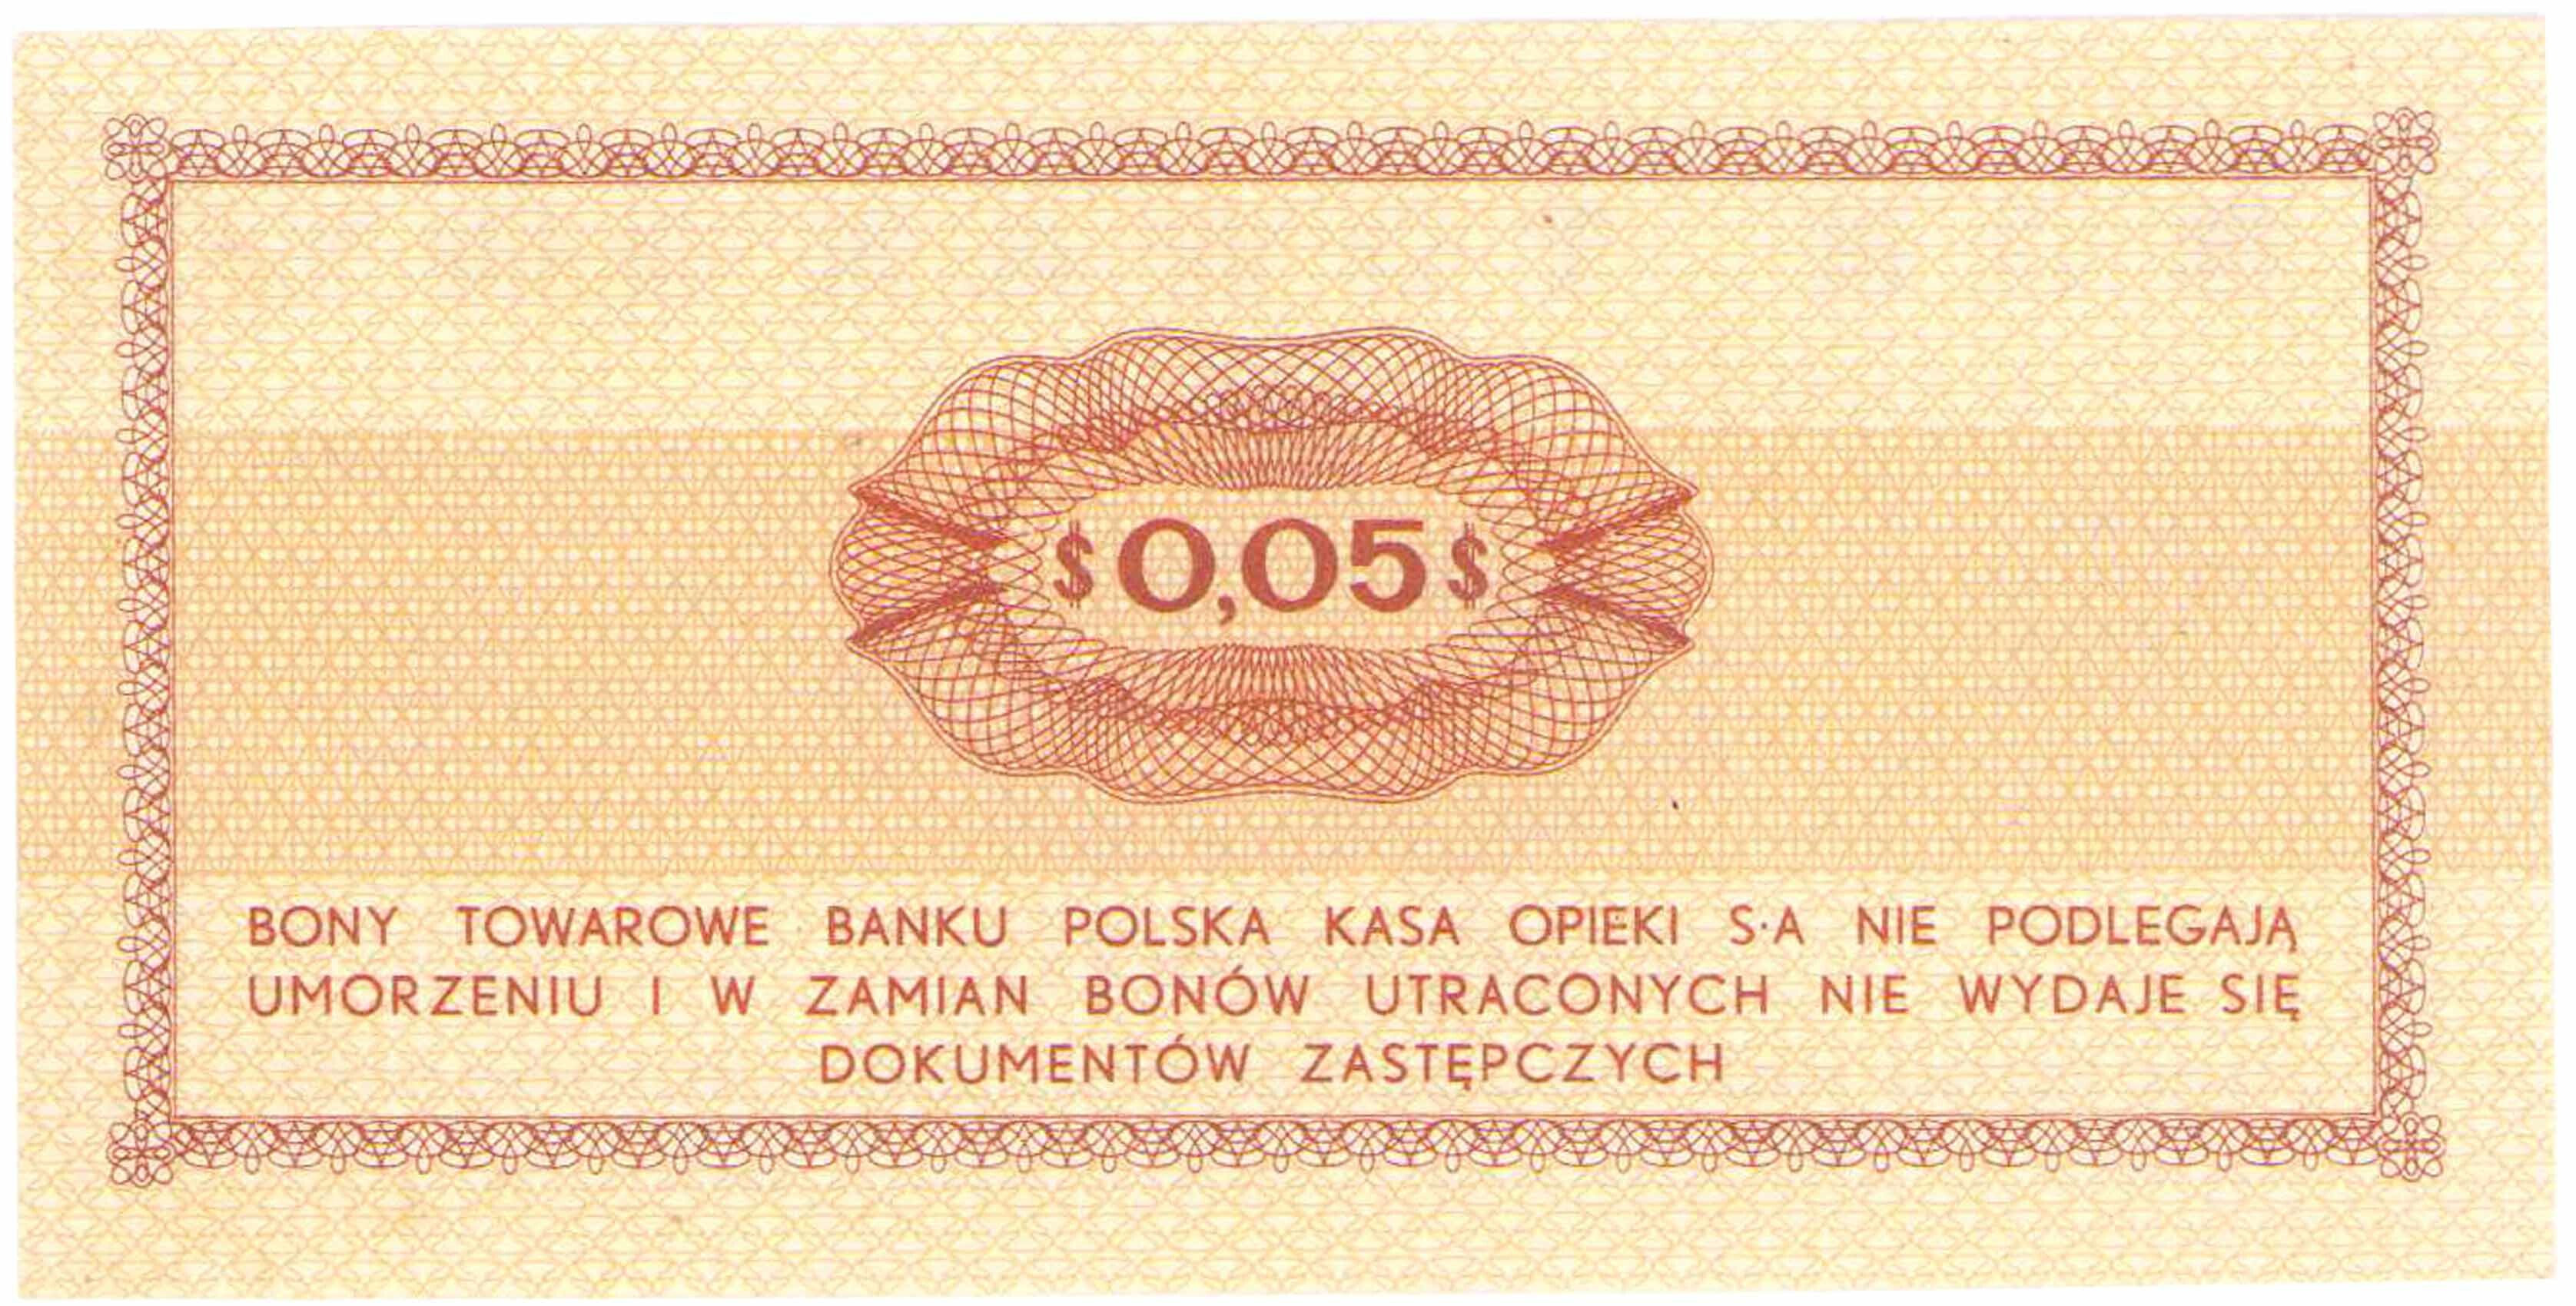 Bon towarowy PEKAO na 5 centów 1969 seria Ea 